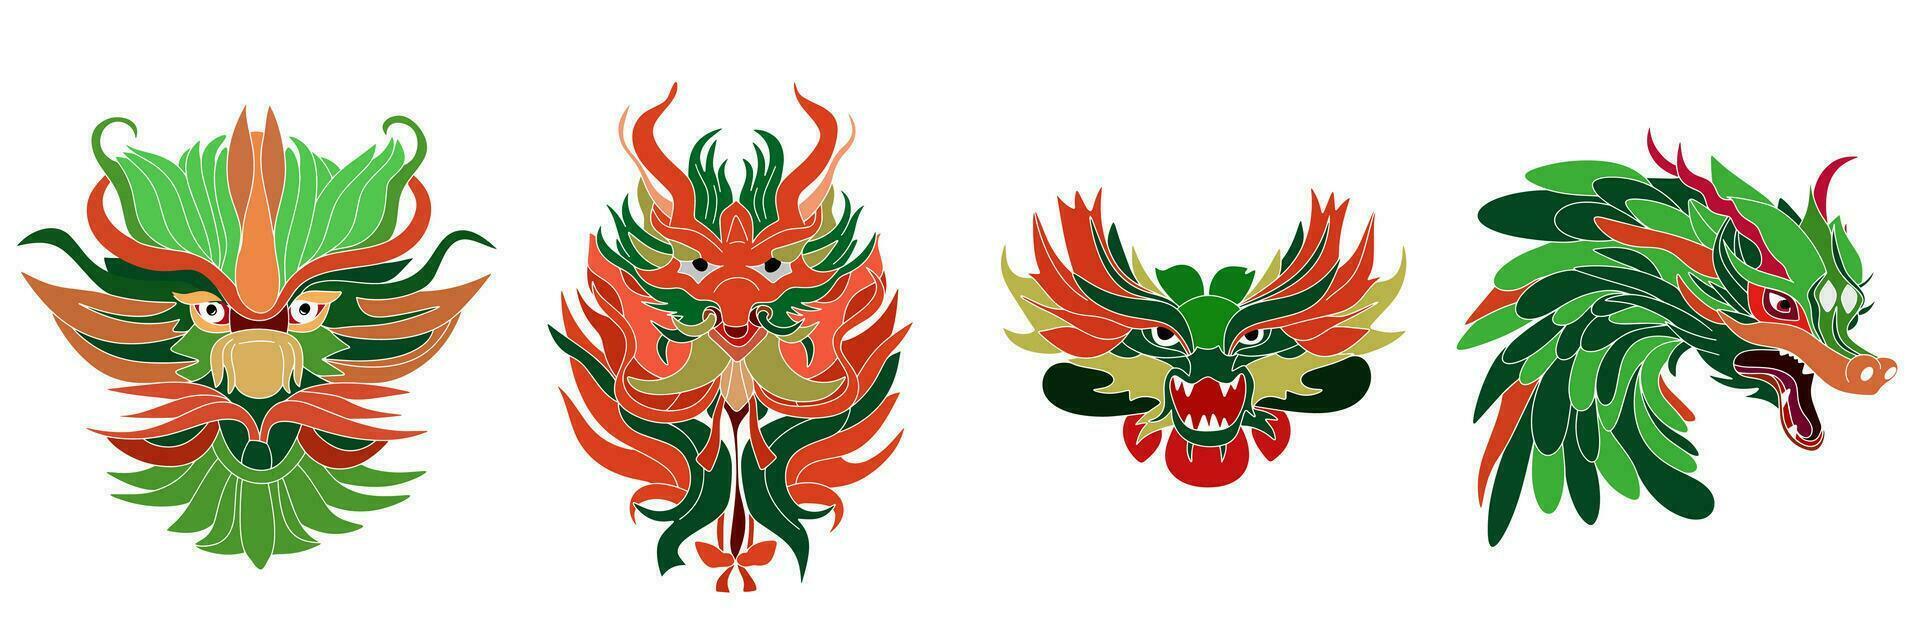 conjunto de verde dragones mano dibujado verde del dragón cabeza. vector ilustración.